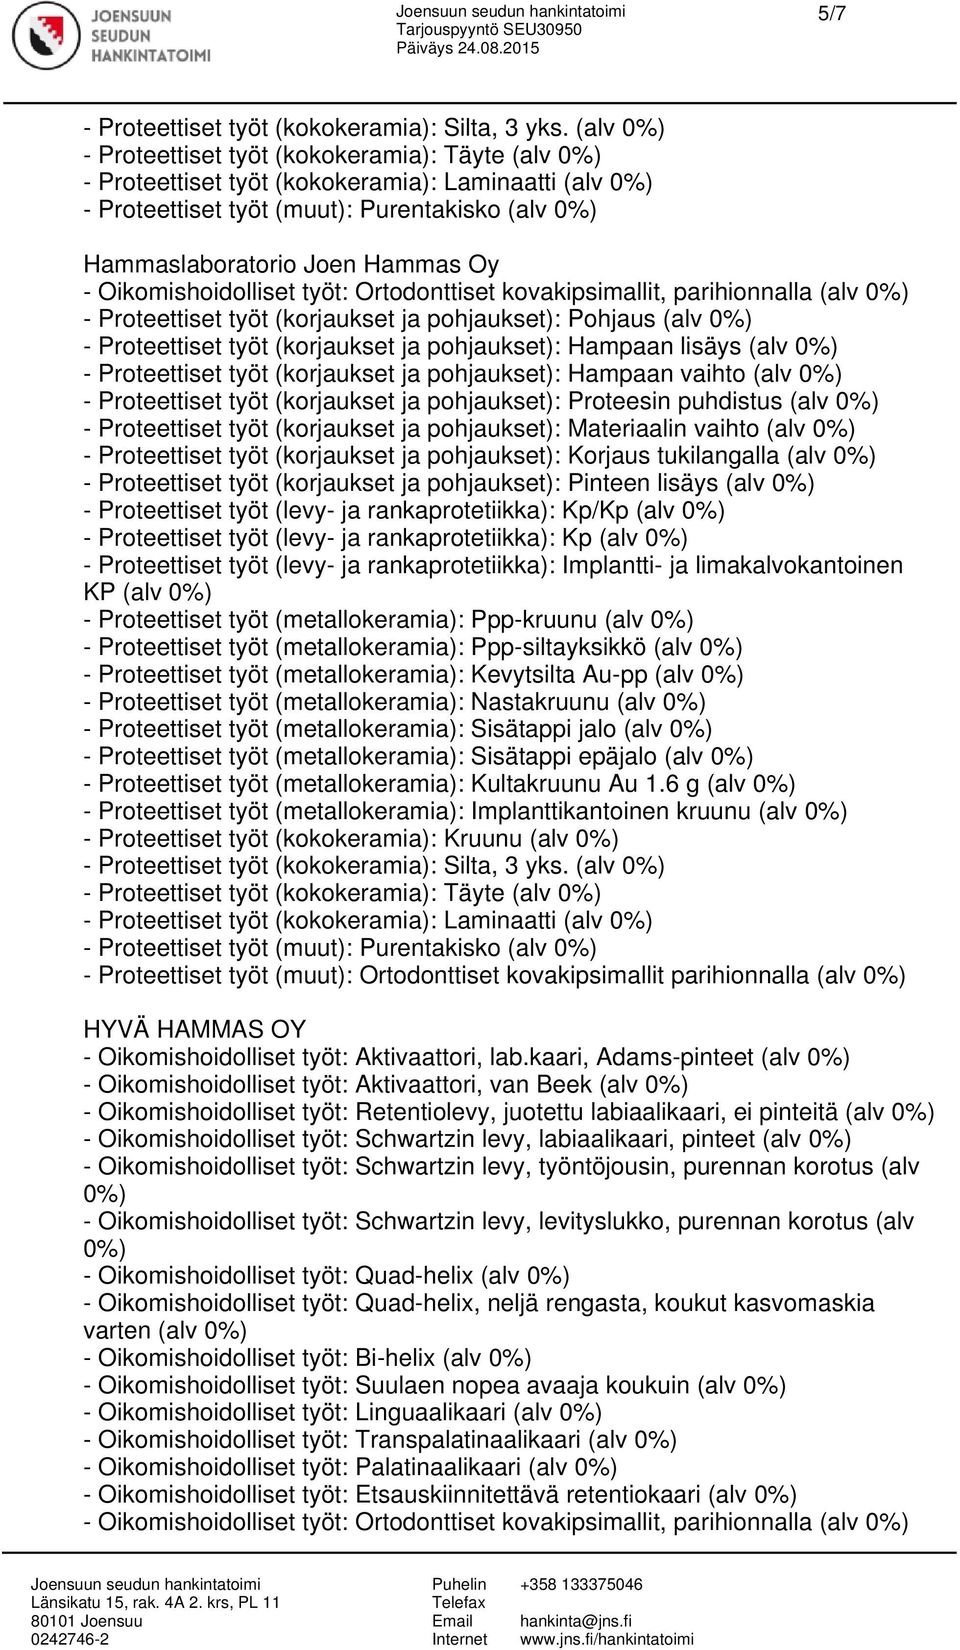 rankaprotetiikka): Kp/Kp (alv - Proteettiset työt (levy- ja rankaprotetiikka): Kp (alv - Proteettiset työt (muut): Purentakisko (alv - Proteettiset työt (muut): Ortodonttiset kovakipsimallit